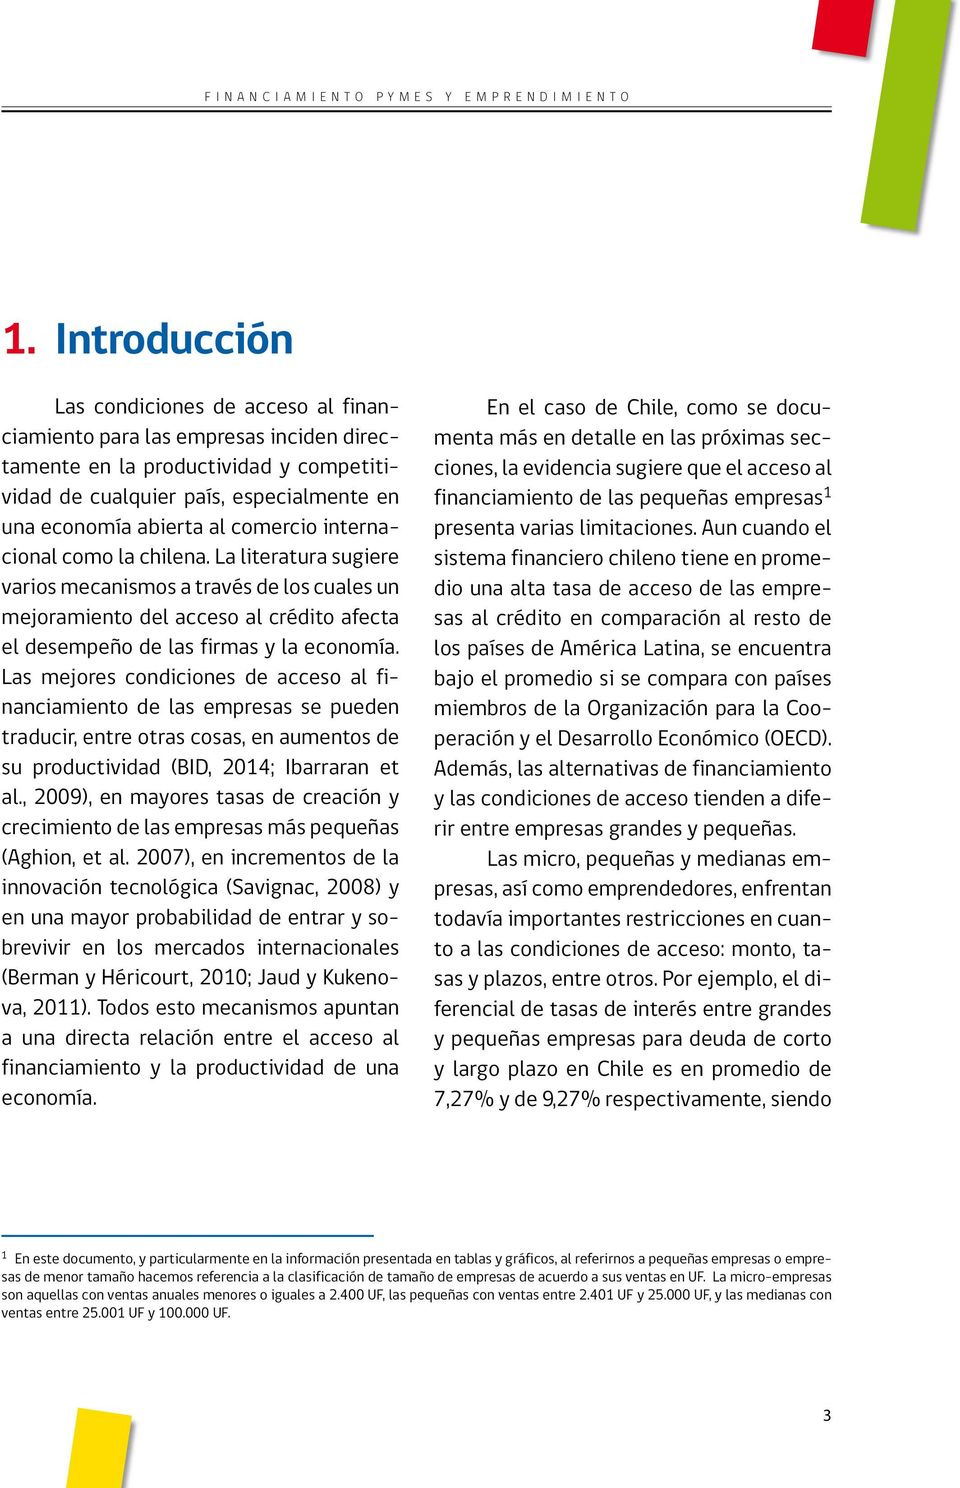 Las mejores condiciones de acceso al financiamiento de las empresas se pueden traducir, entre otras cosas, en aumentos de su productividad (BID, 2014; Ibarraran et al.